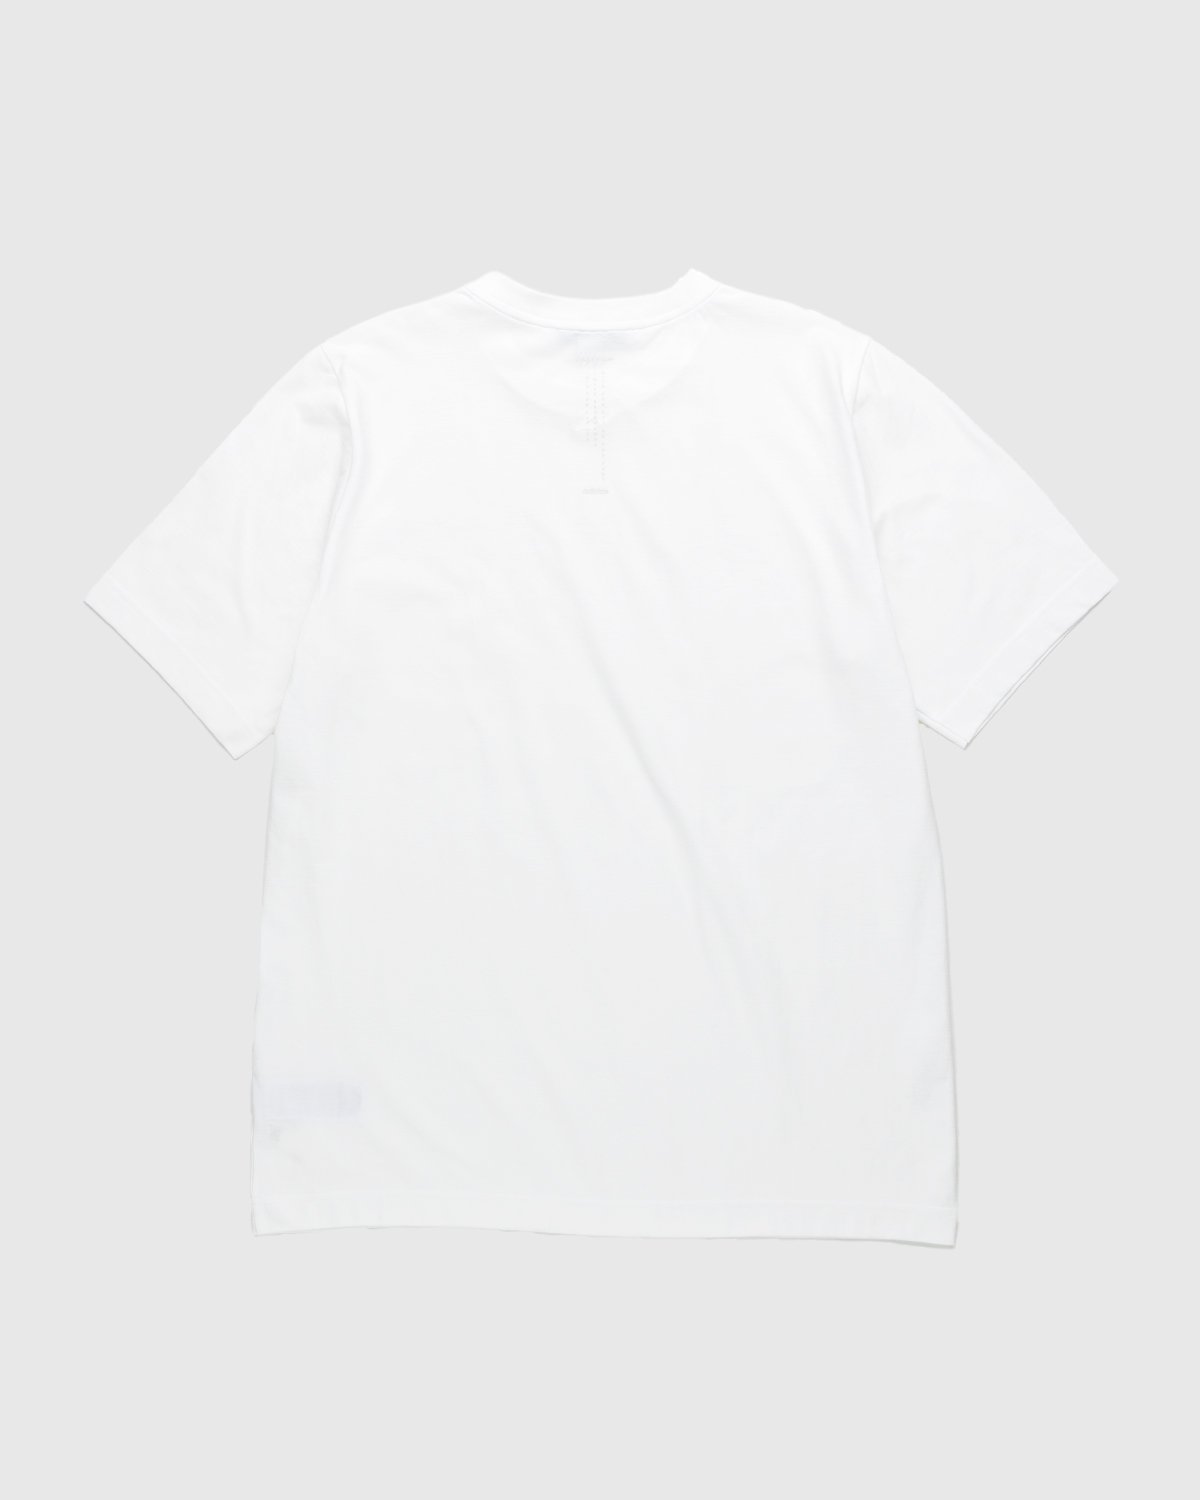 Y-3 - Logo T-Shirt White - Clothing - White - Image 2